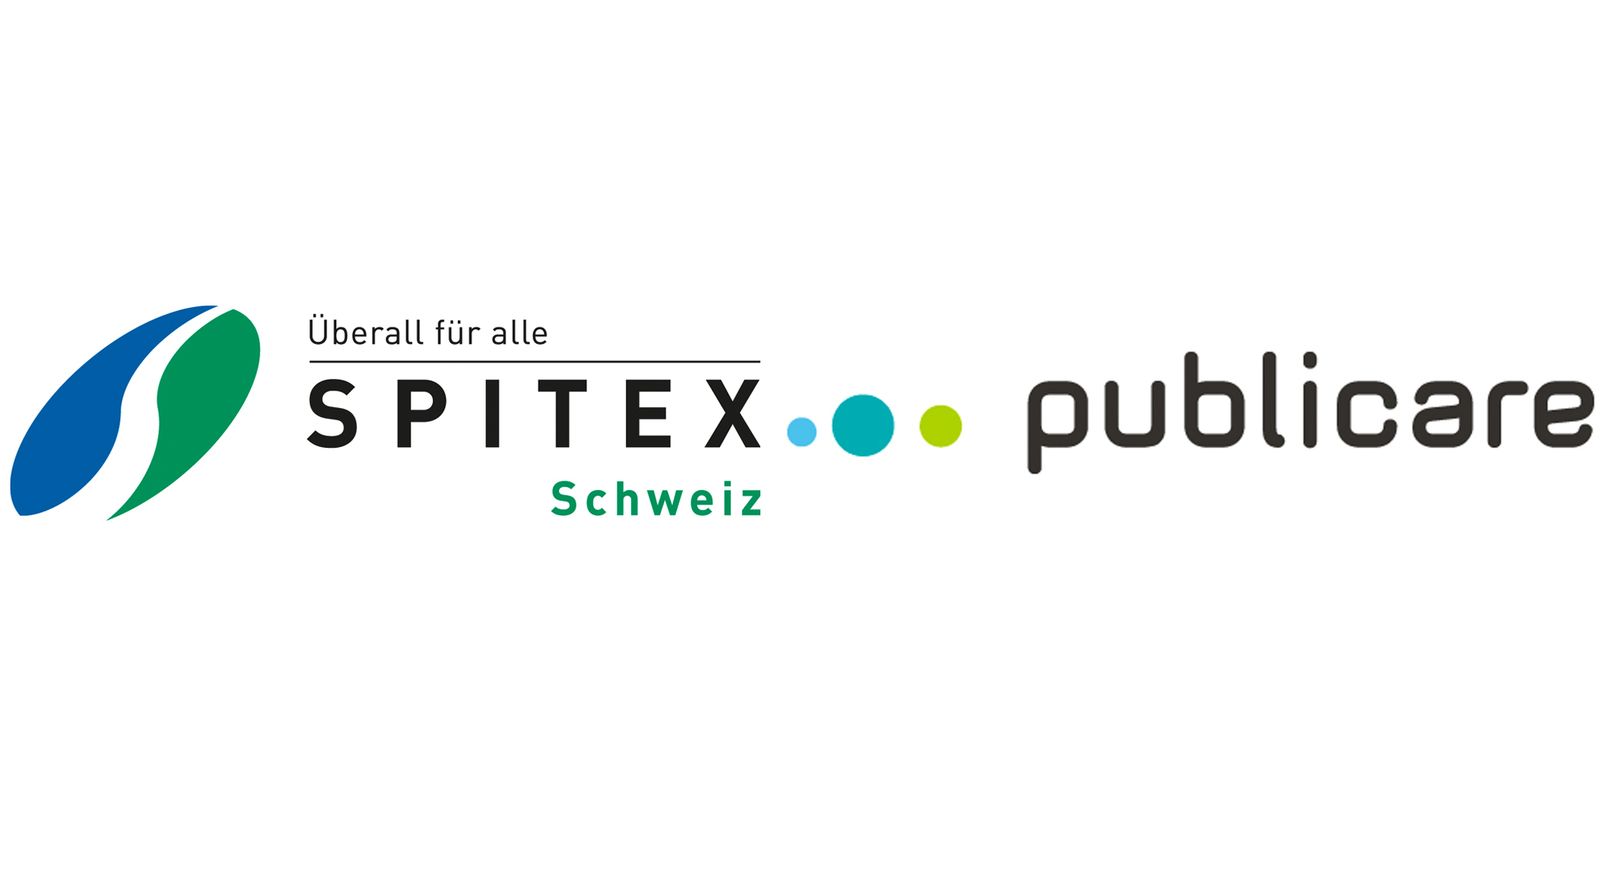 Medienmitteilung: Publicare ist neuer Premiumpartner von Spitex Schweiz